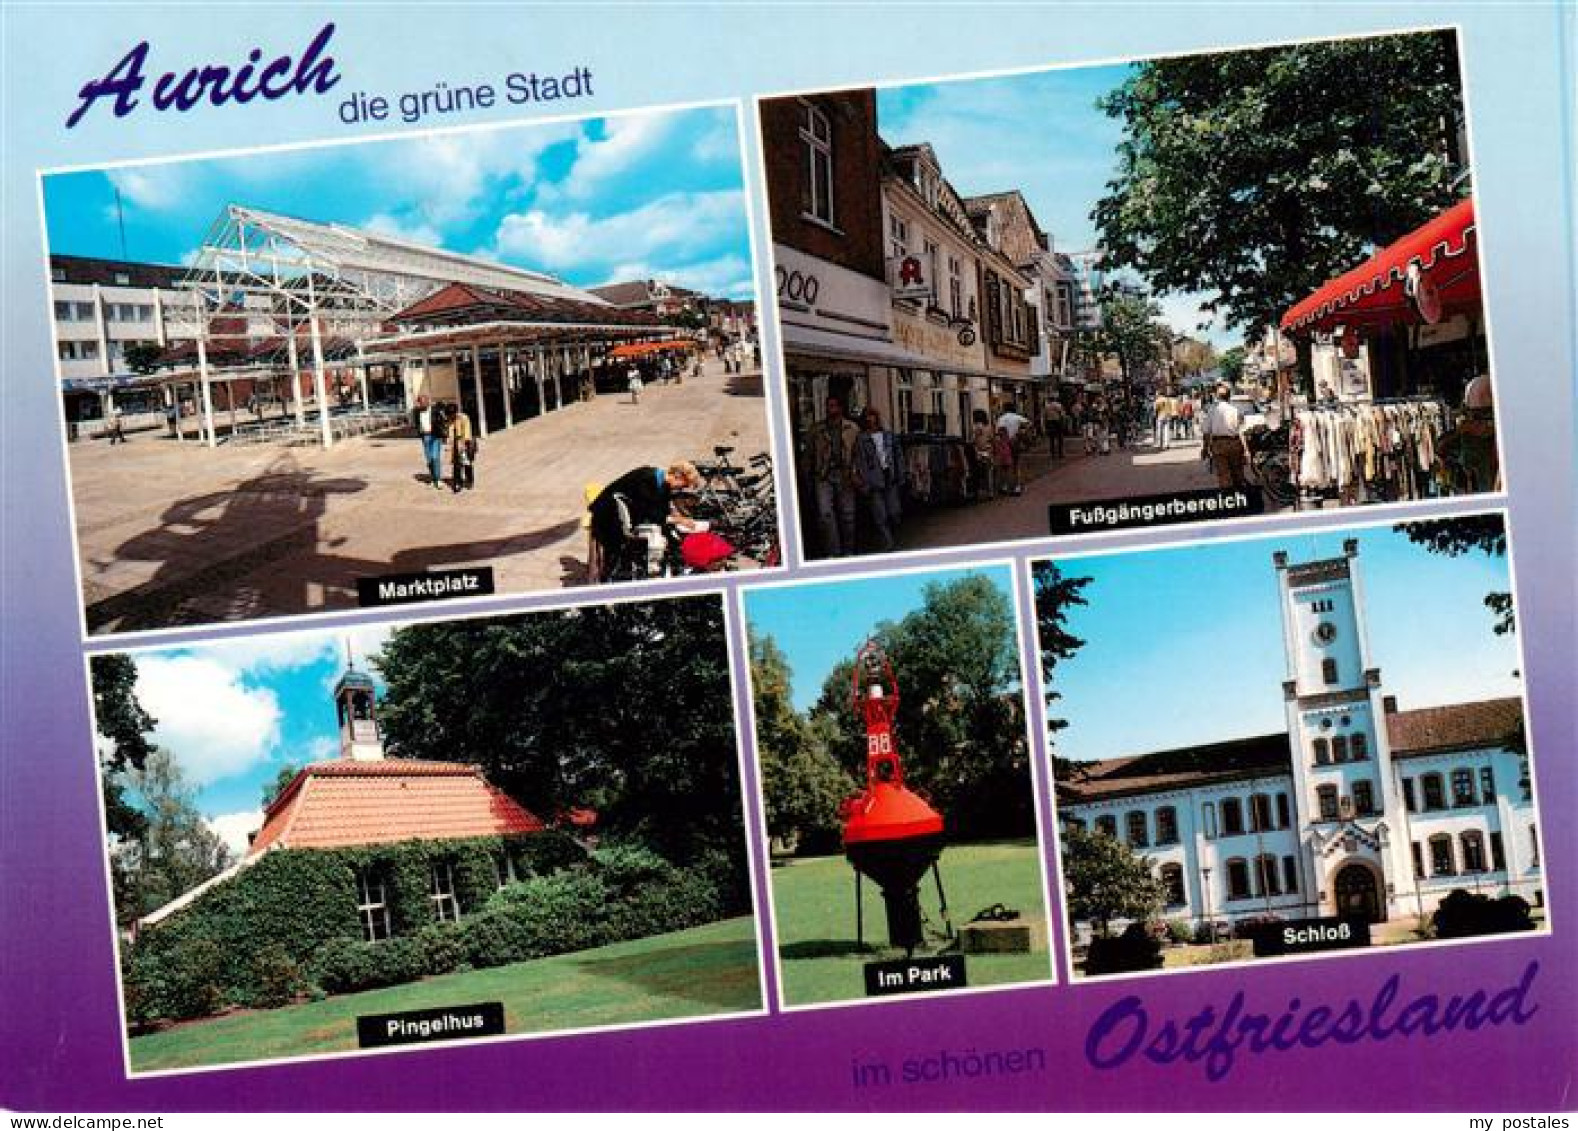 73930289 Aurich_Ostfriesland Marktplatz Fussgaengerzone Pingelhus Im Park Schlos - Aurich